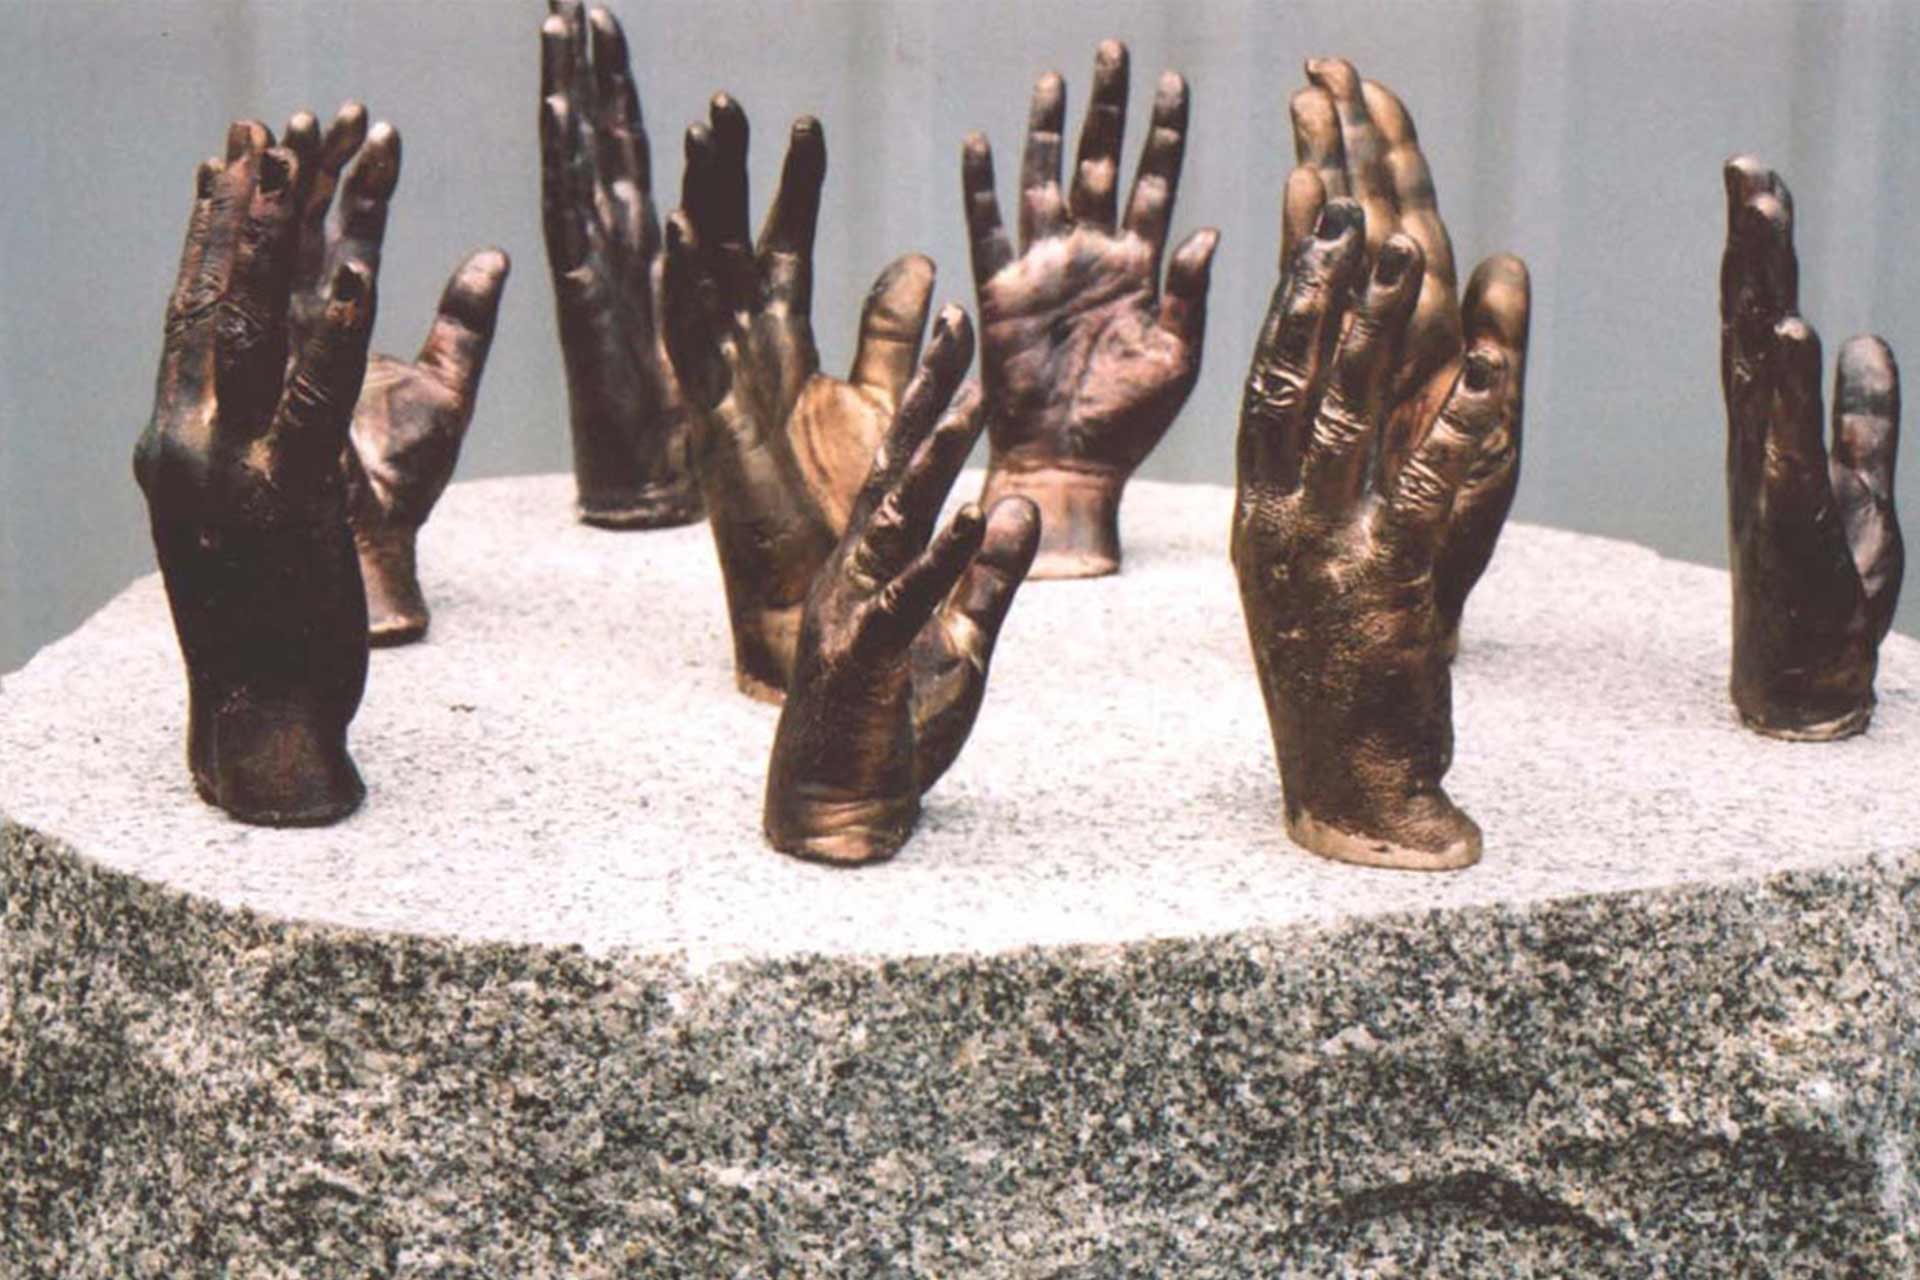 Hand sculptures